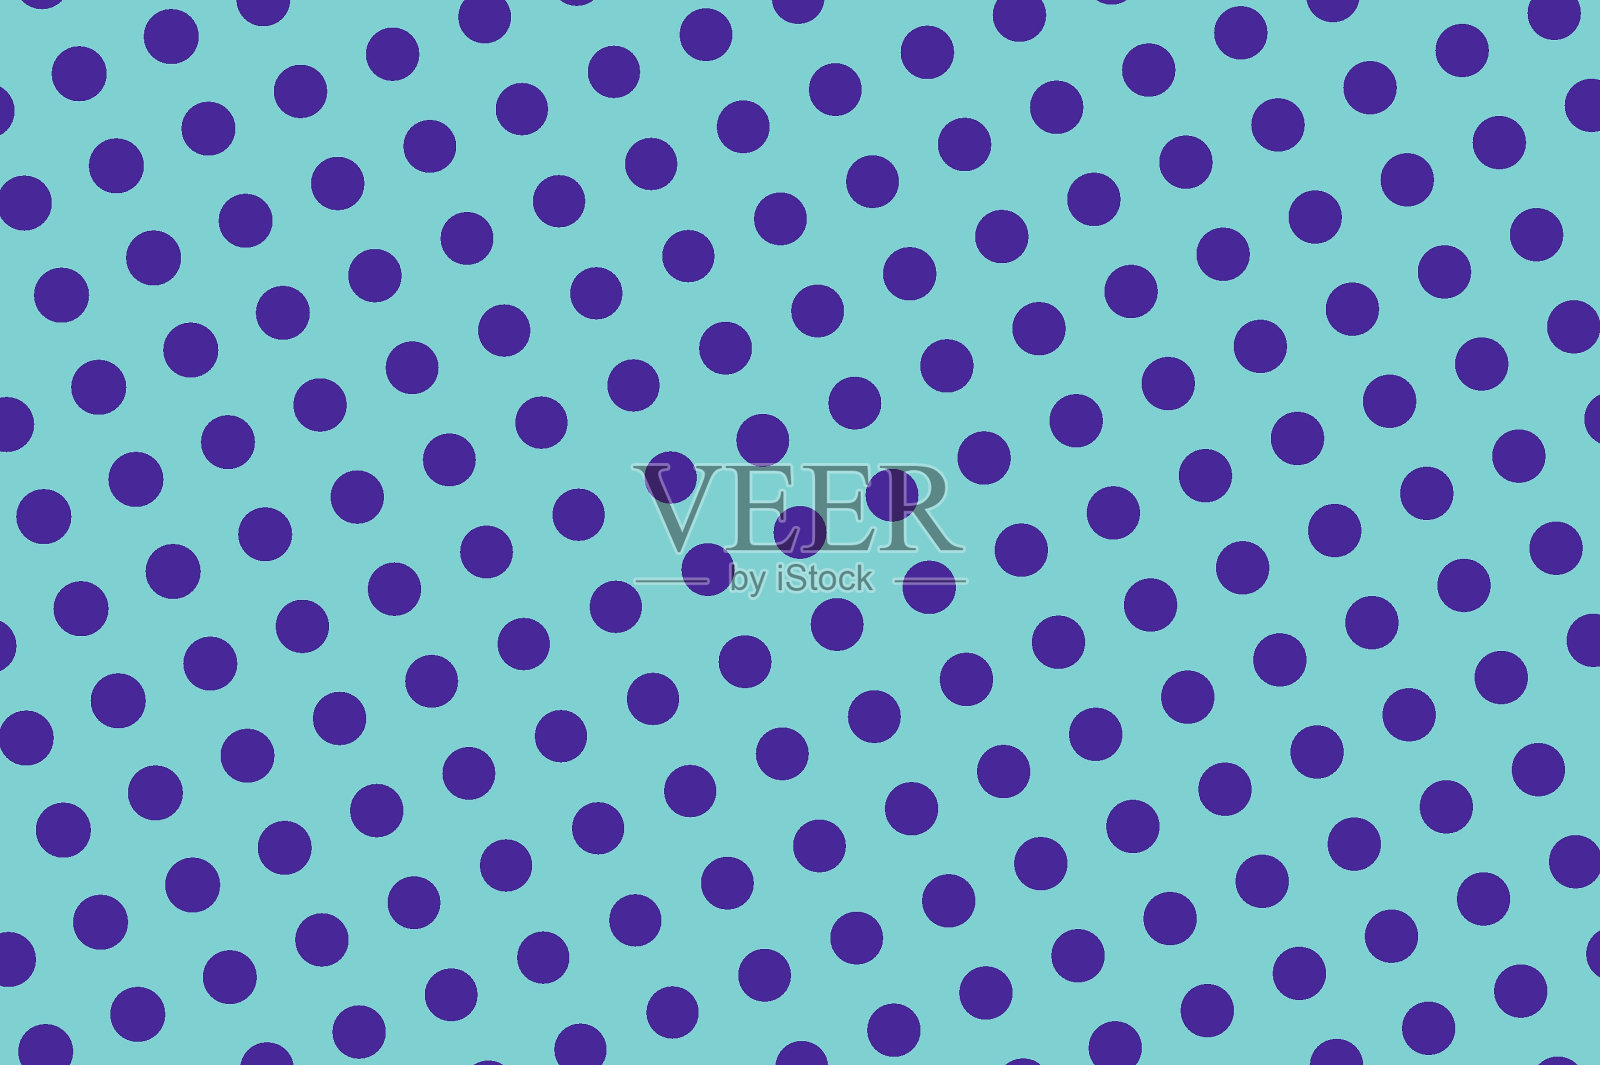 蓝色紫色虚点半色调矢量背景。水平梯度半色调横幅模板。插画图片素材